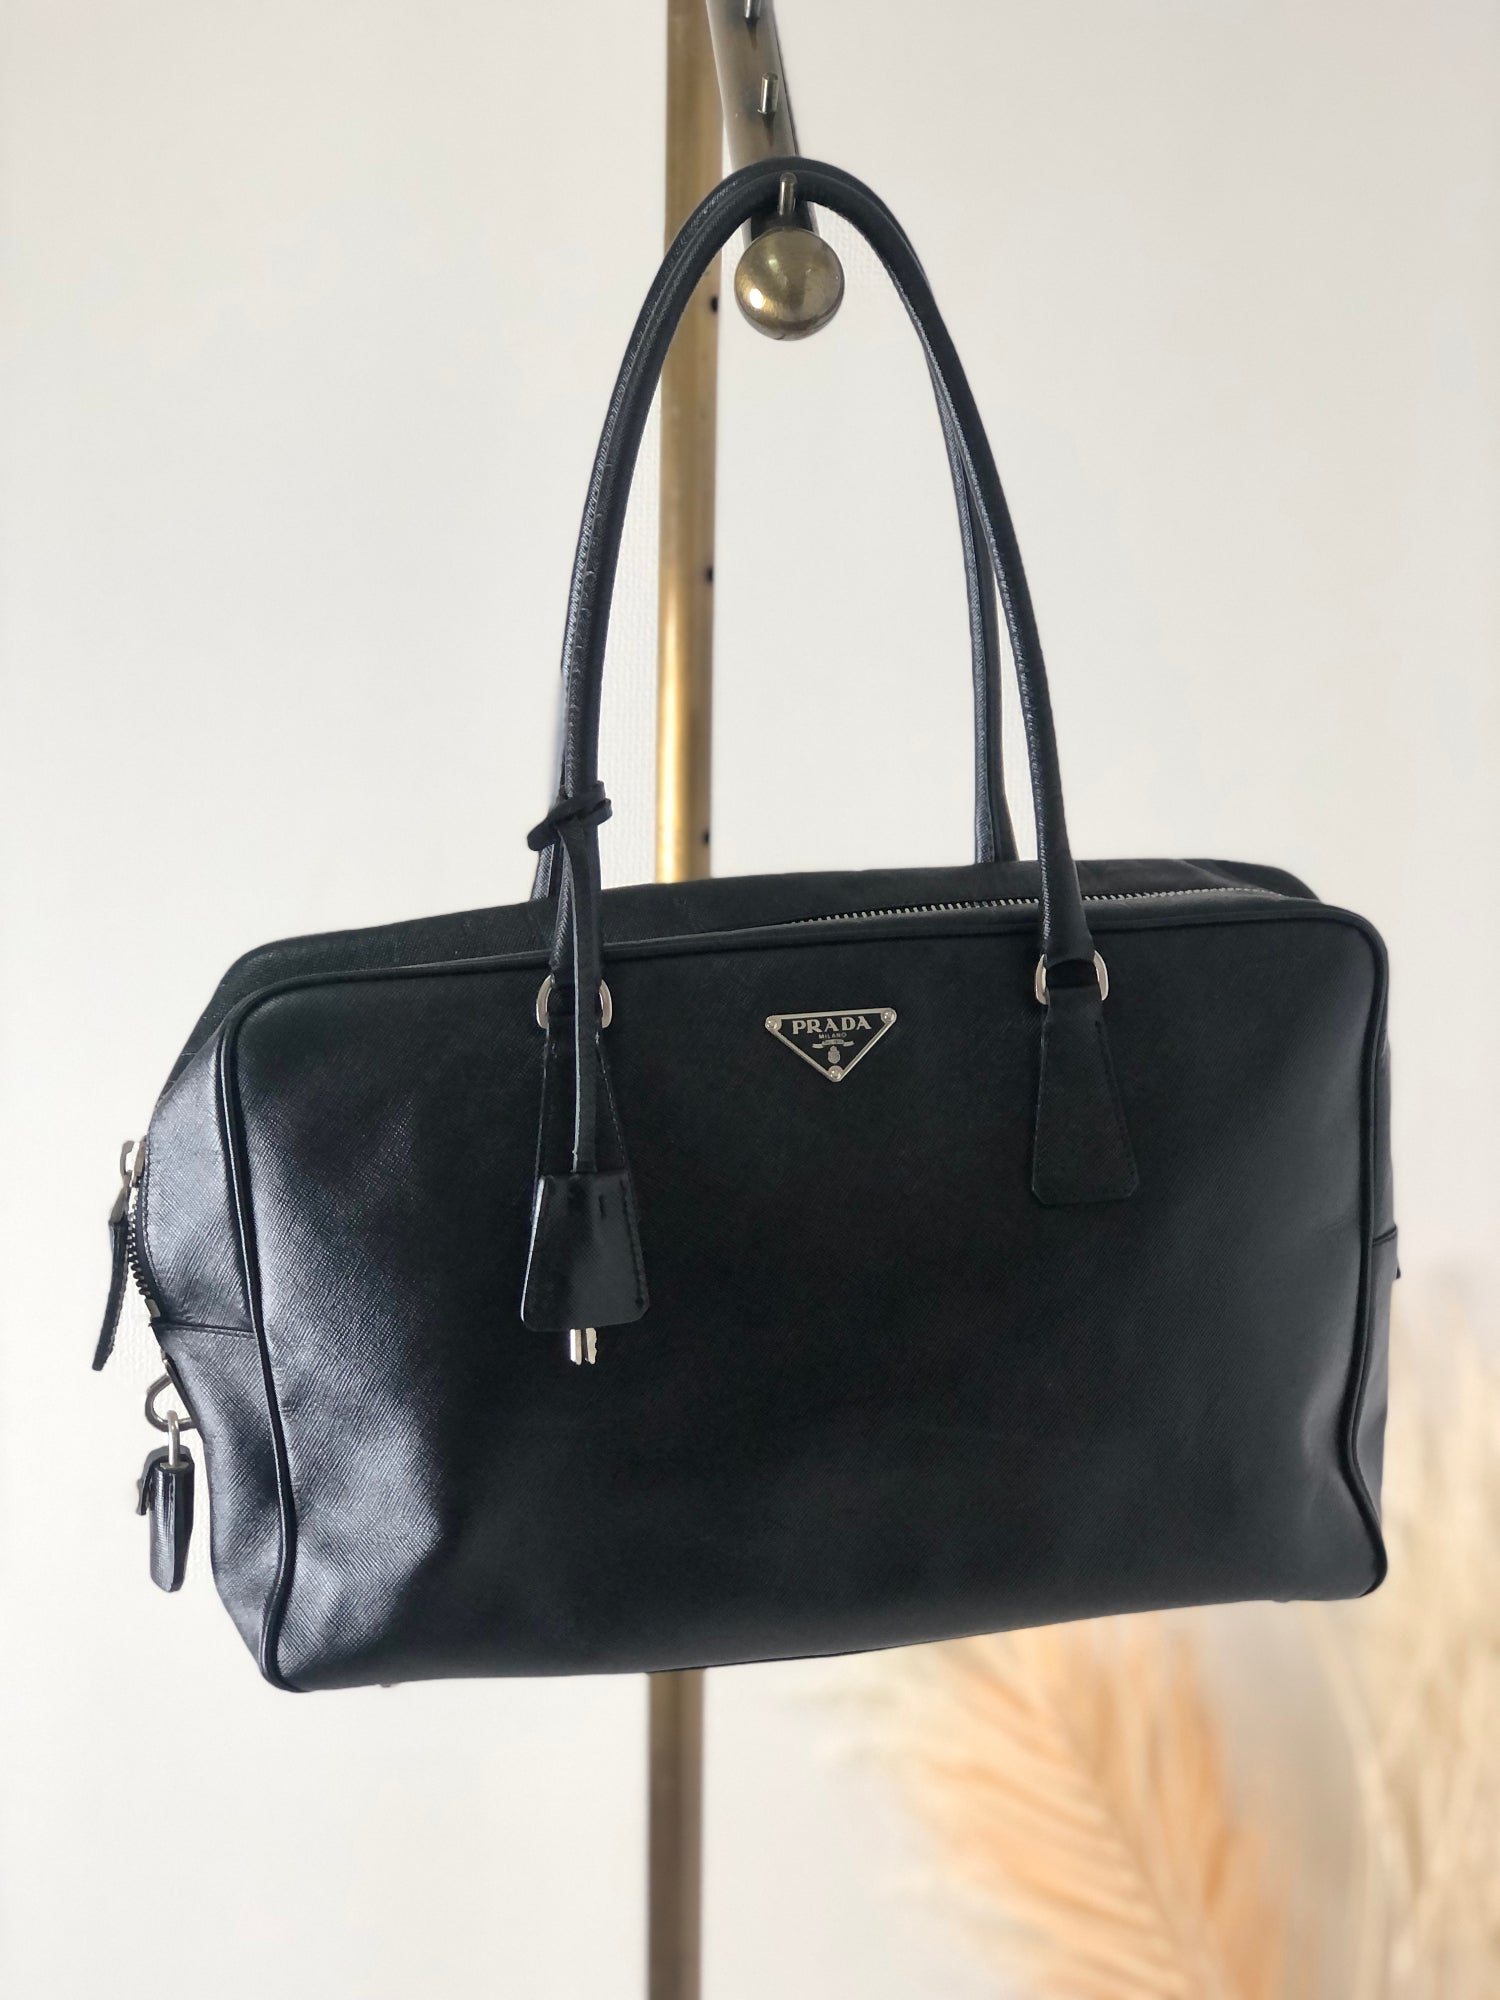 Is this Prada bag real : r/vinted